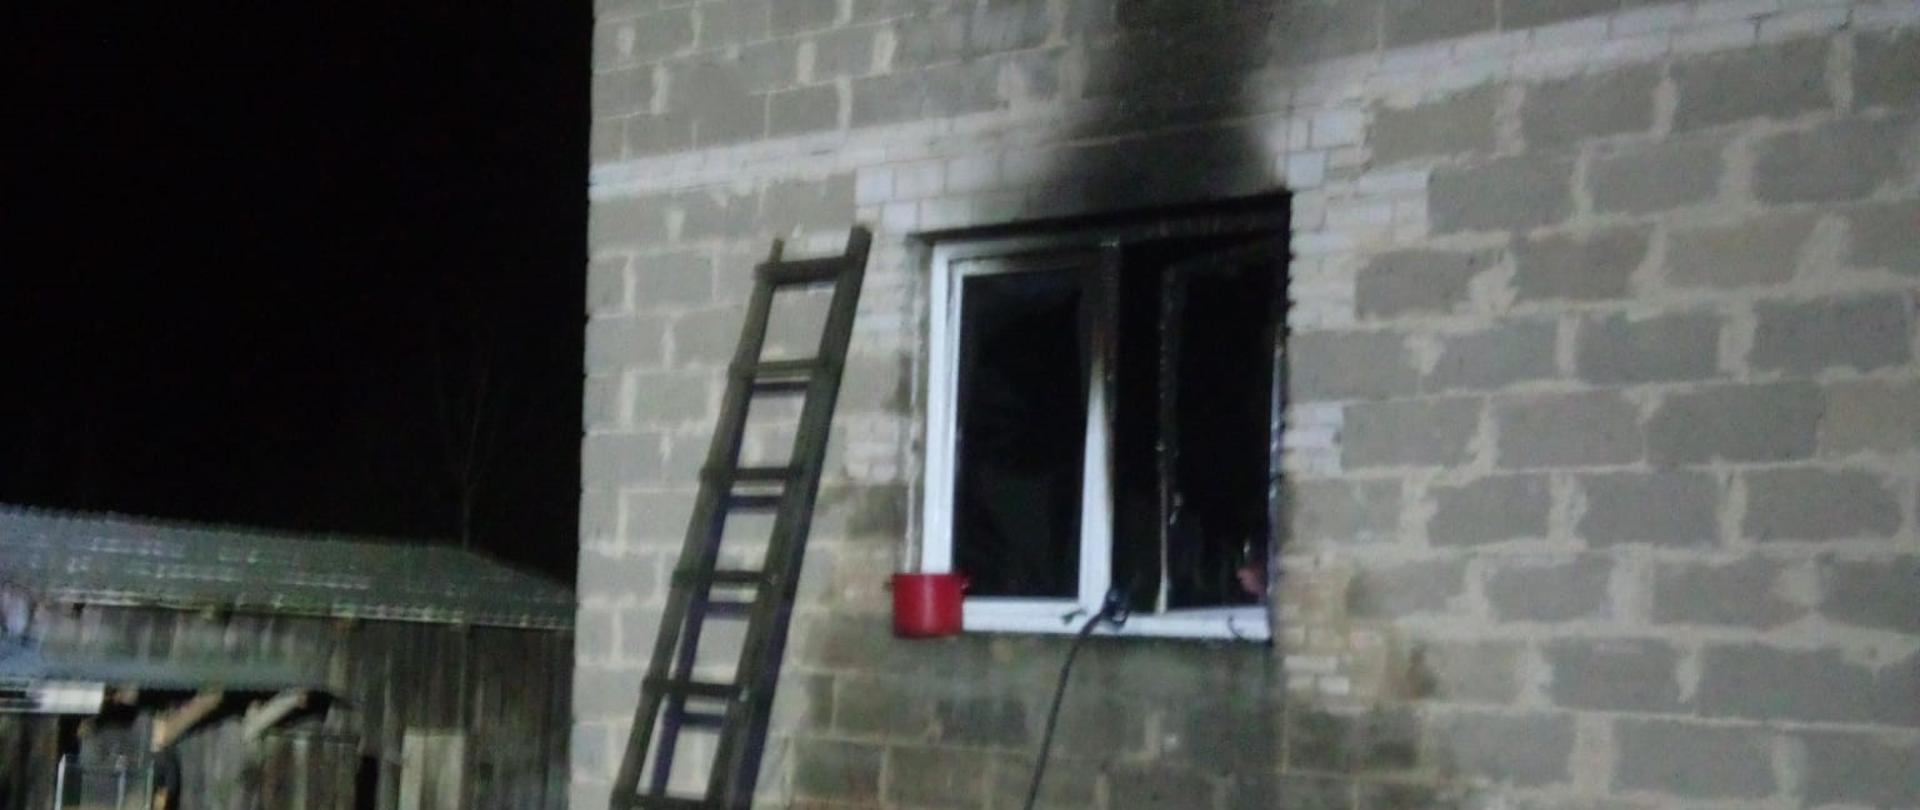 Zdjęcie przedstawia budynek murowany mieszkalny gdzie doszło do pożaru. Okno na parterze jest mocno okopcone i widać przystawioną do ściany drabinę.